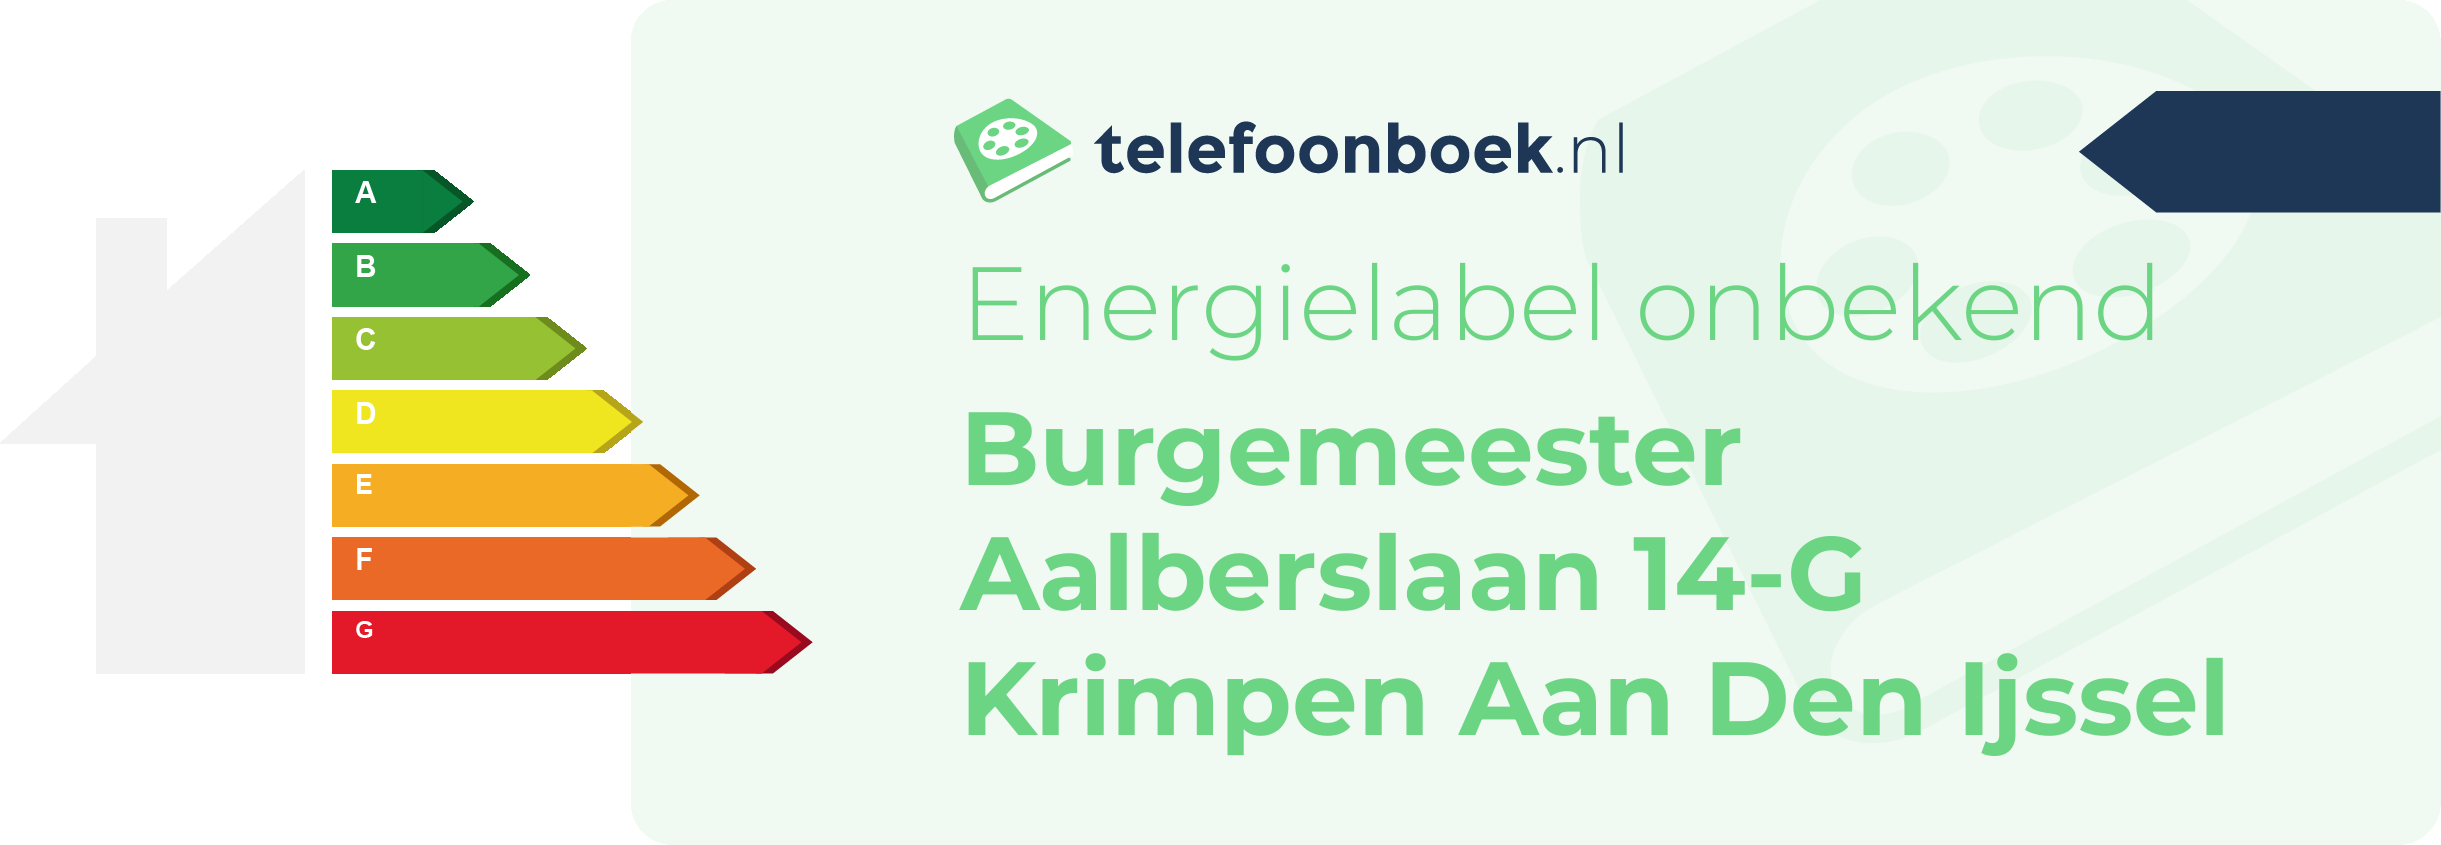 Energielabel Burgemeester Aalberslaan 14-G Krimpen Aan Den Ijssel